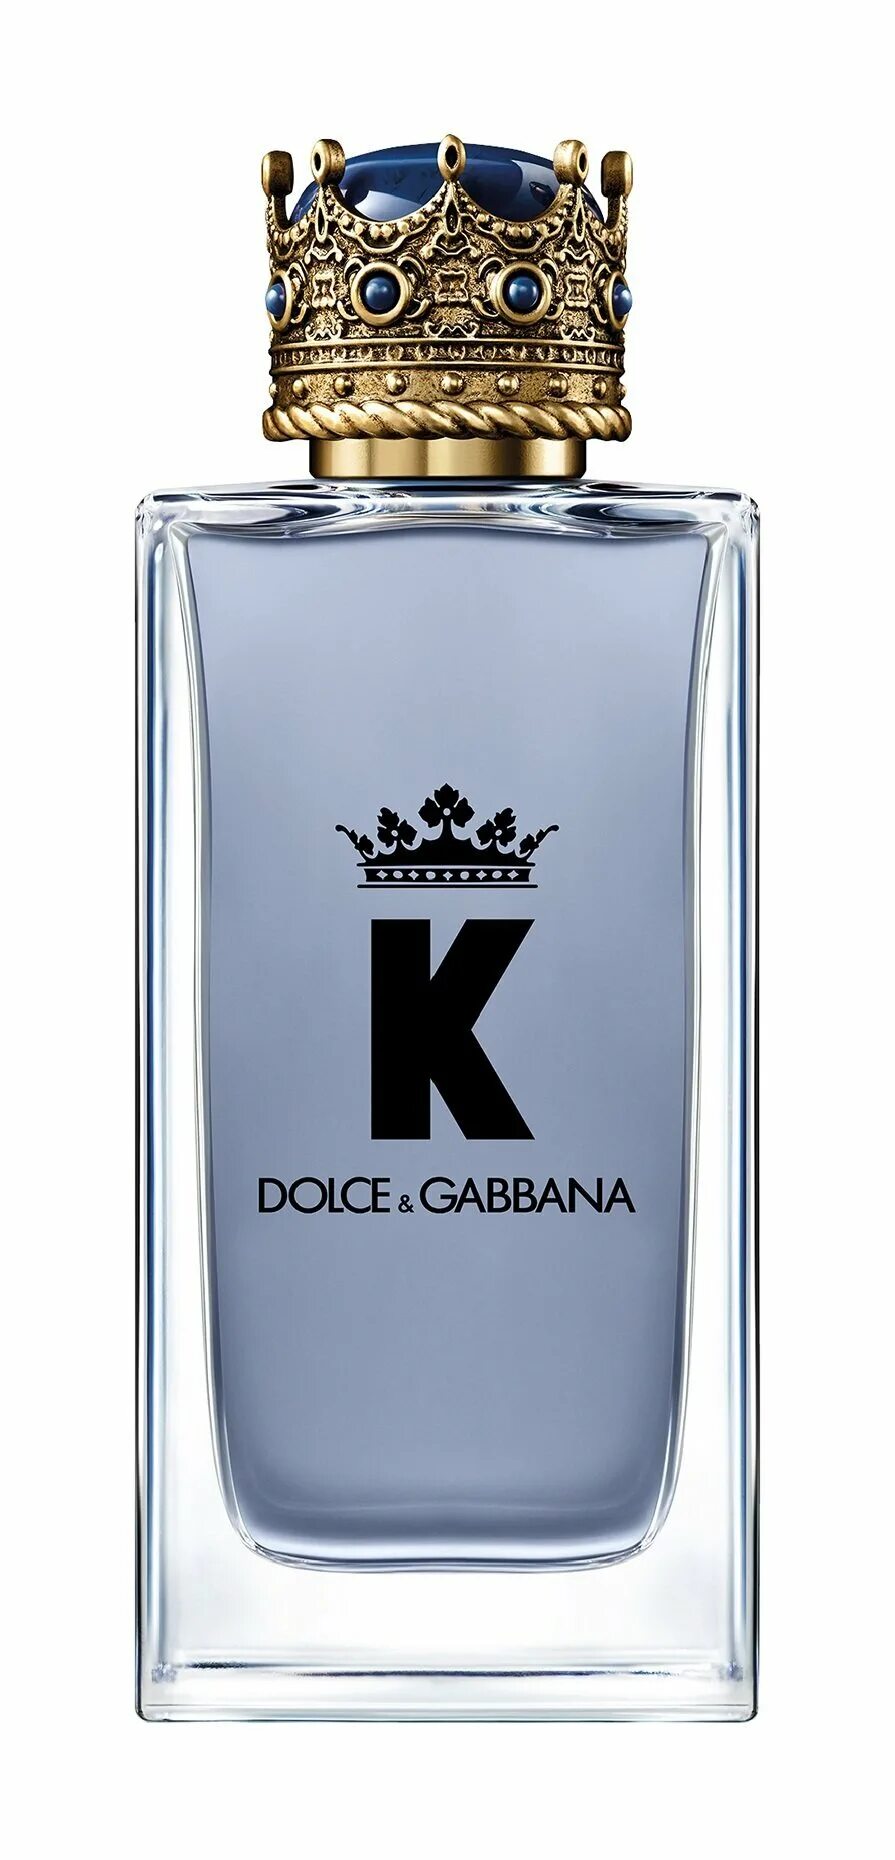 Дольче кинг мужские. Dolce & Gabbana by k EDP, 100 ml. •Dolce&Gabbana k EDT 100ml. Dolce Gabbana k King 100ml EDT. Dolce Gabbana King 100ml.